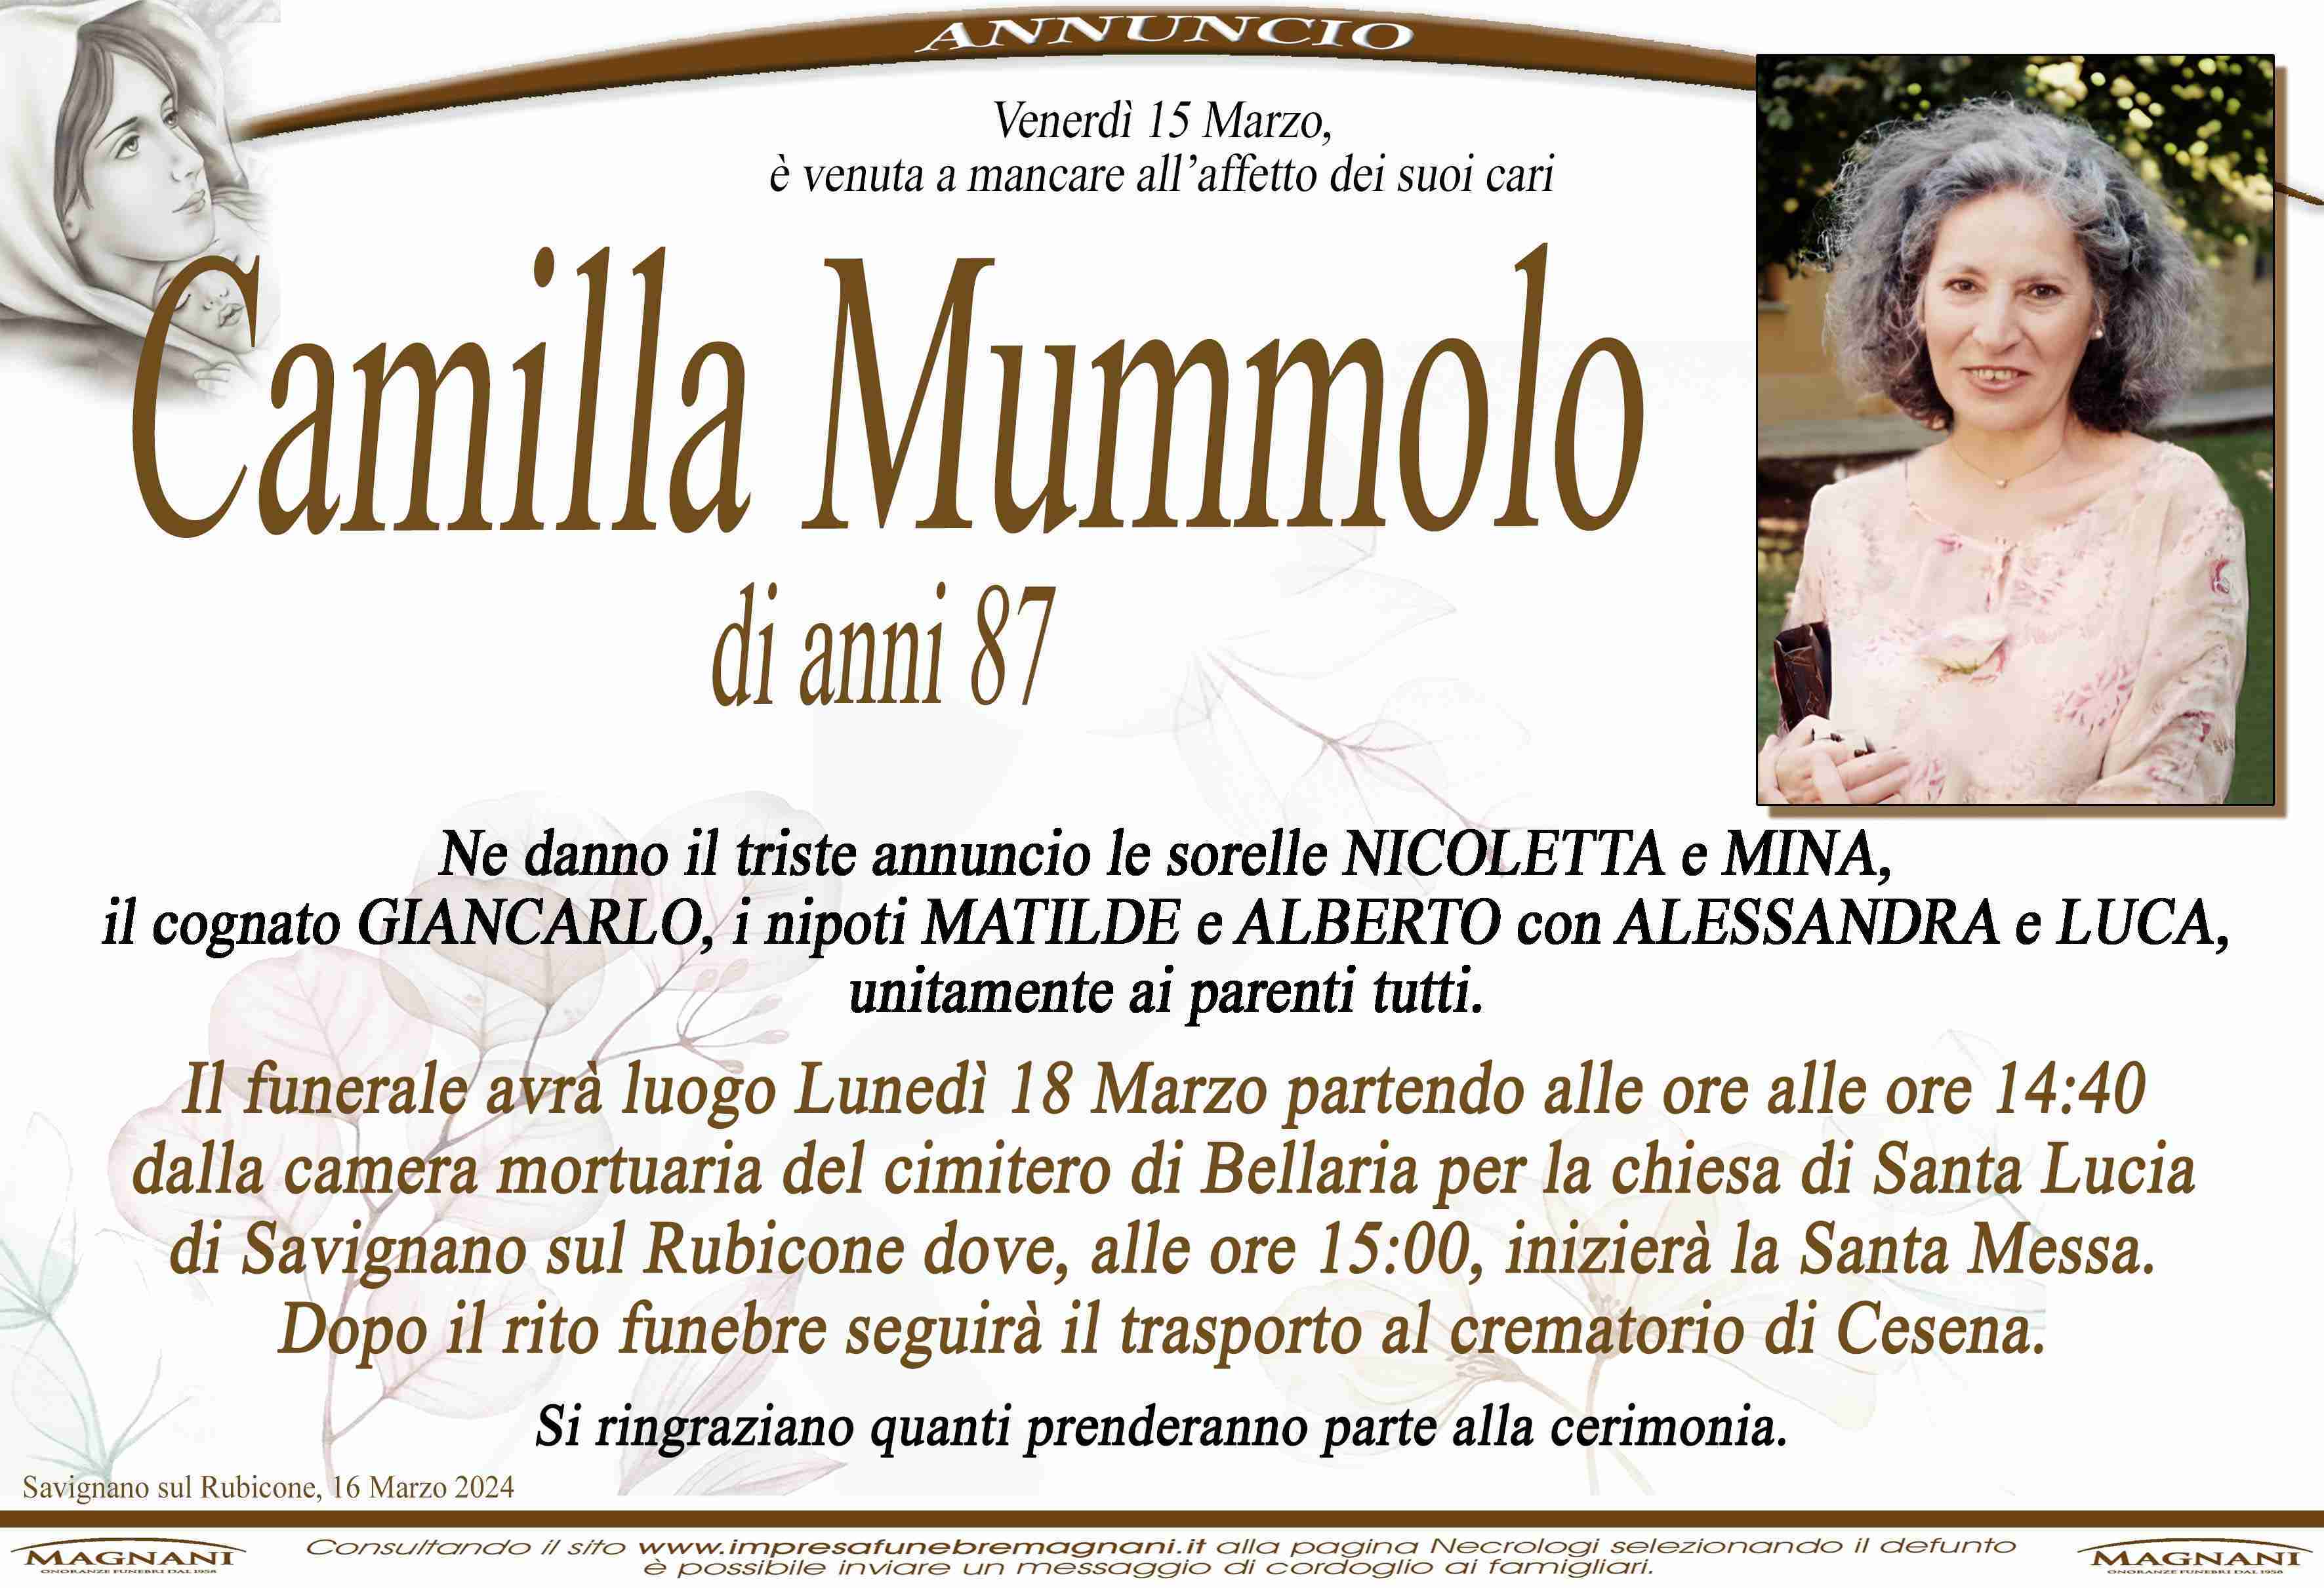 Camilla Mummolo